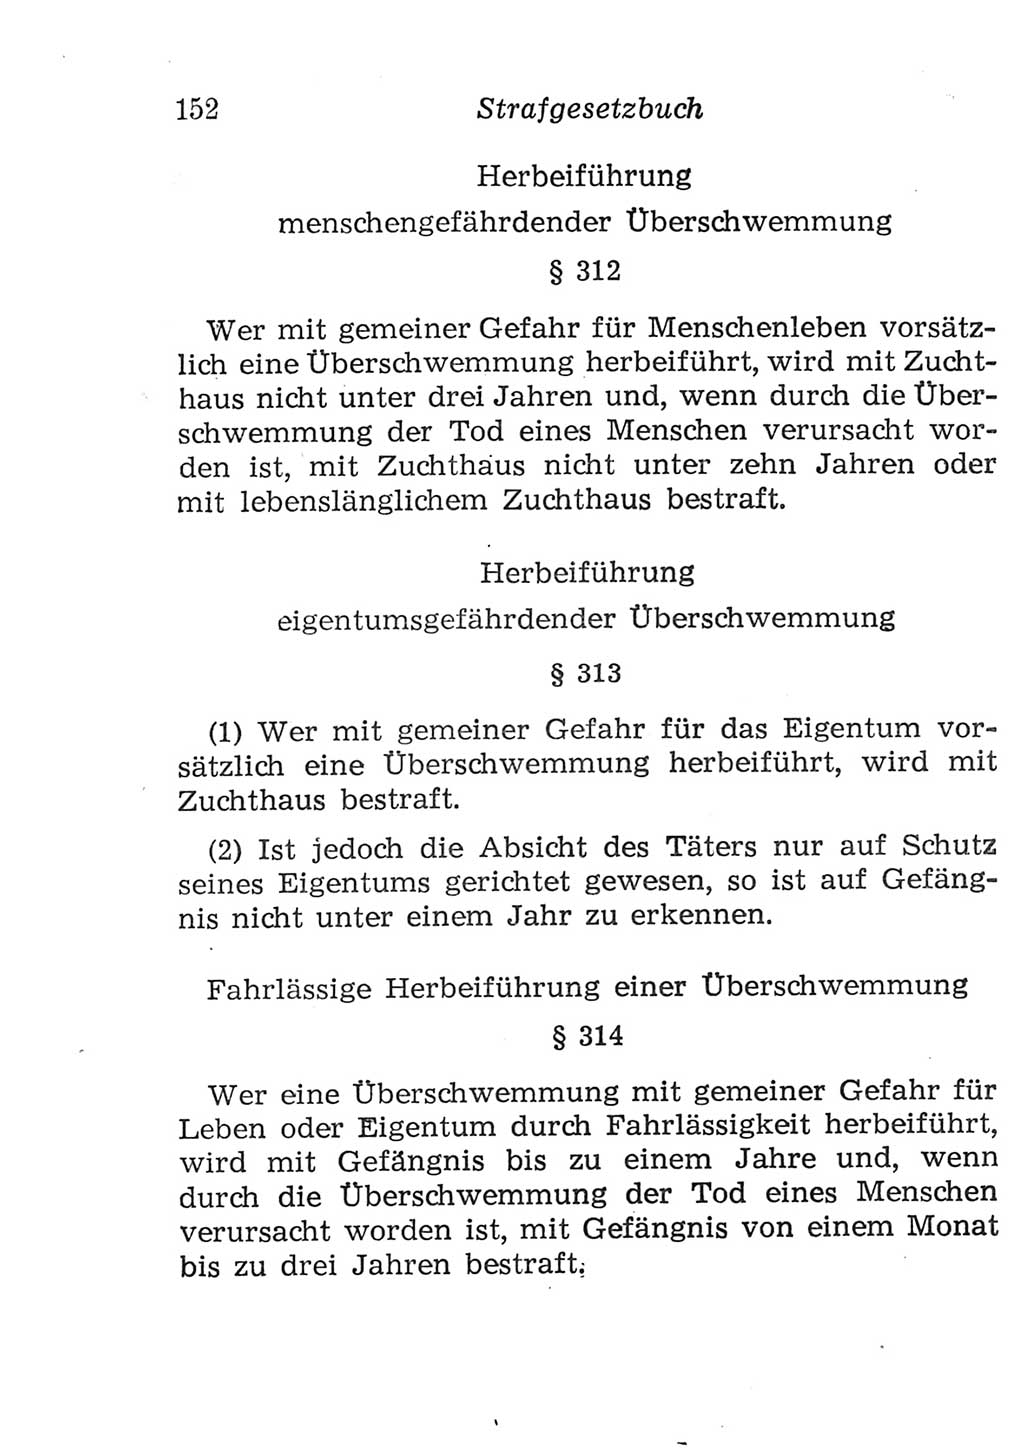 Strafgesetzbuch (StGB) und andere Strafgesetze [Deutsche Demokratische Republik (DDR)] 1957, Seite 152 (StGB Strafges. DDR 1957, S. 152)